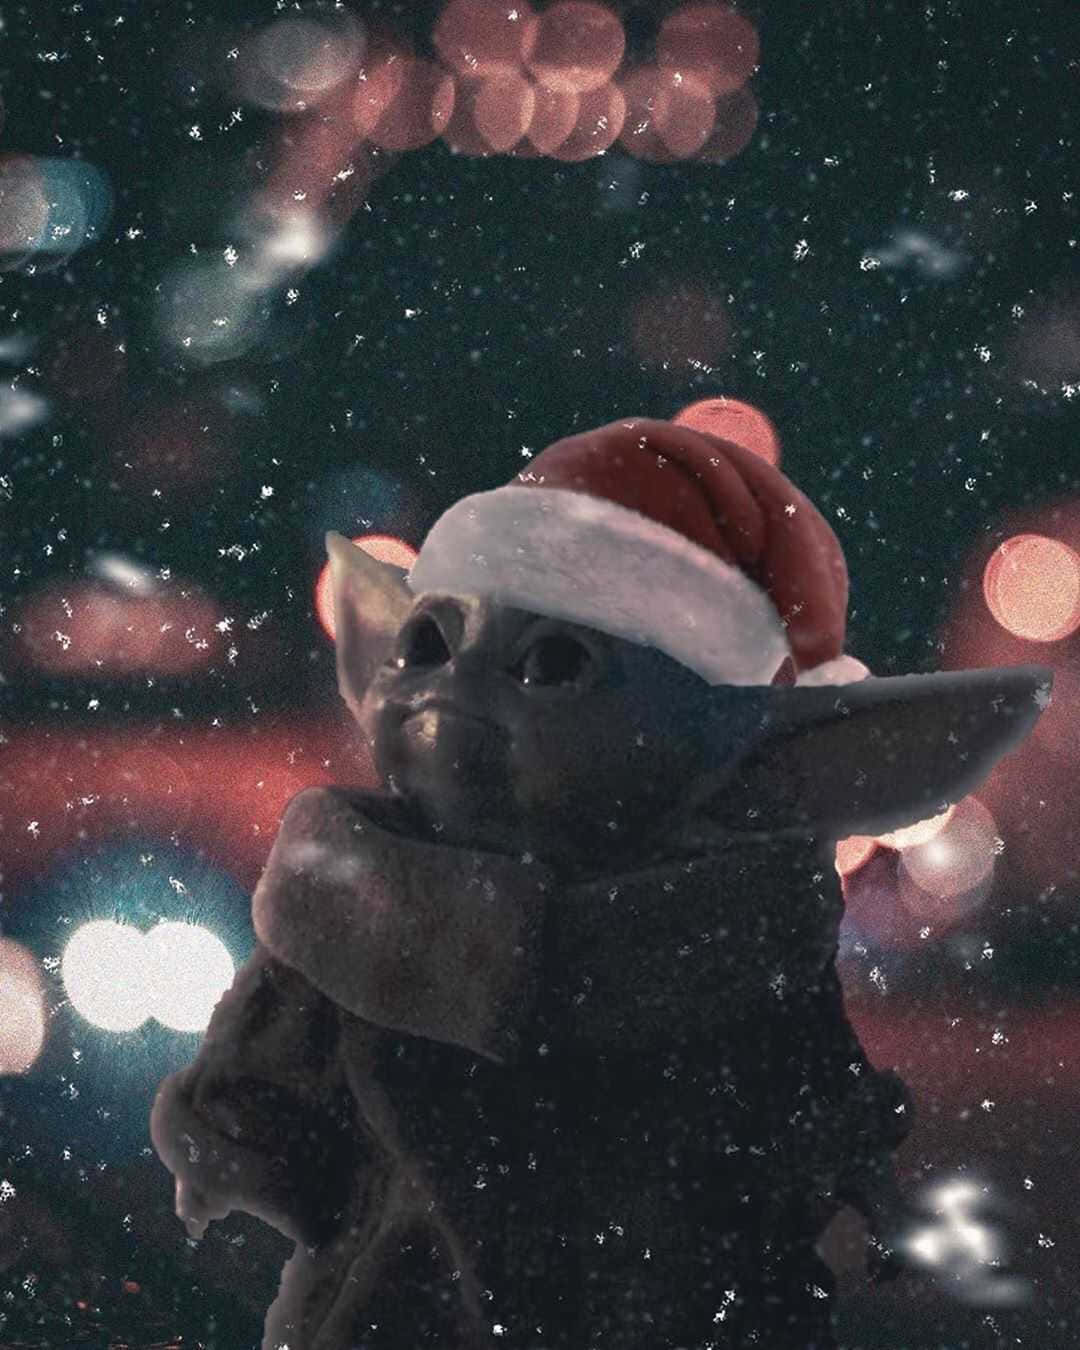 Baby Yoda Fejrer Den Mest Vidunderlige Tid På Året. Wallpaper